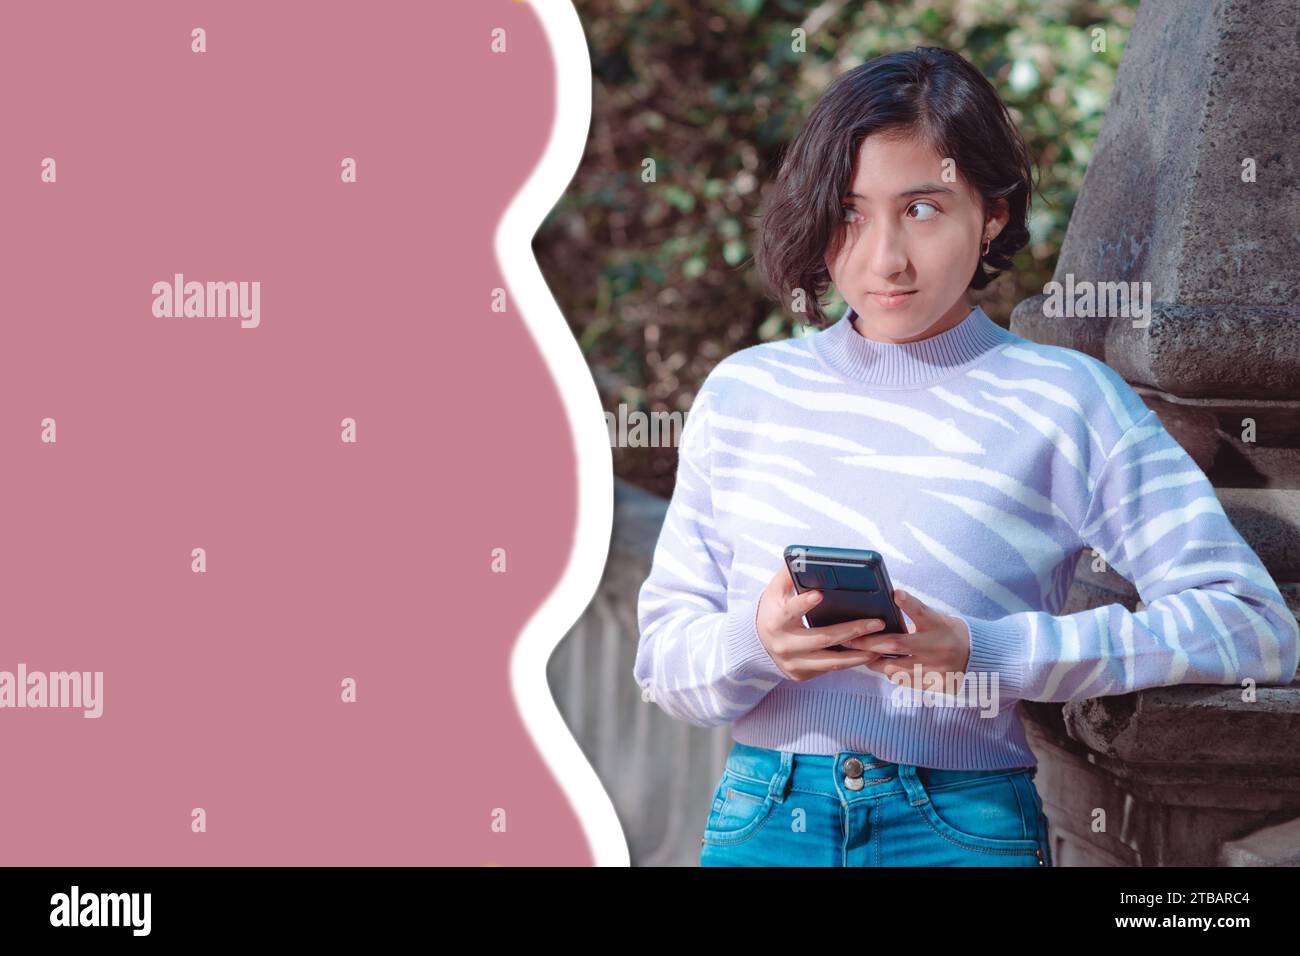 Foto creativa, una chica está de pie y mirando su teléfono celular, tiene expresión de incertidumbre, espacio libre para el texto, redes sociales. Foto de stock